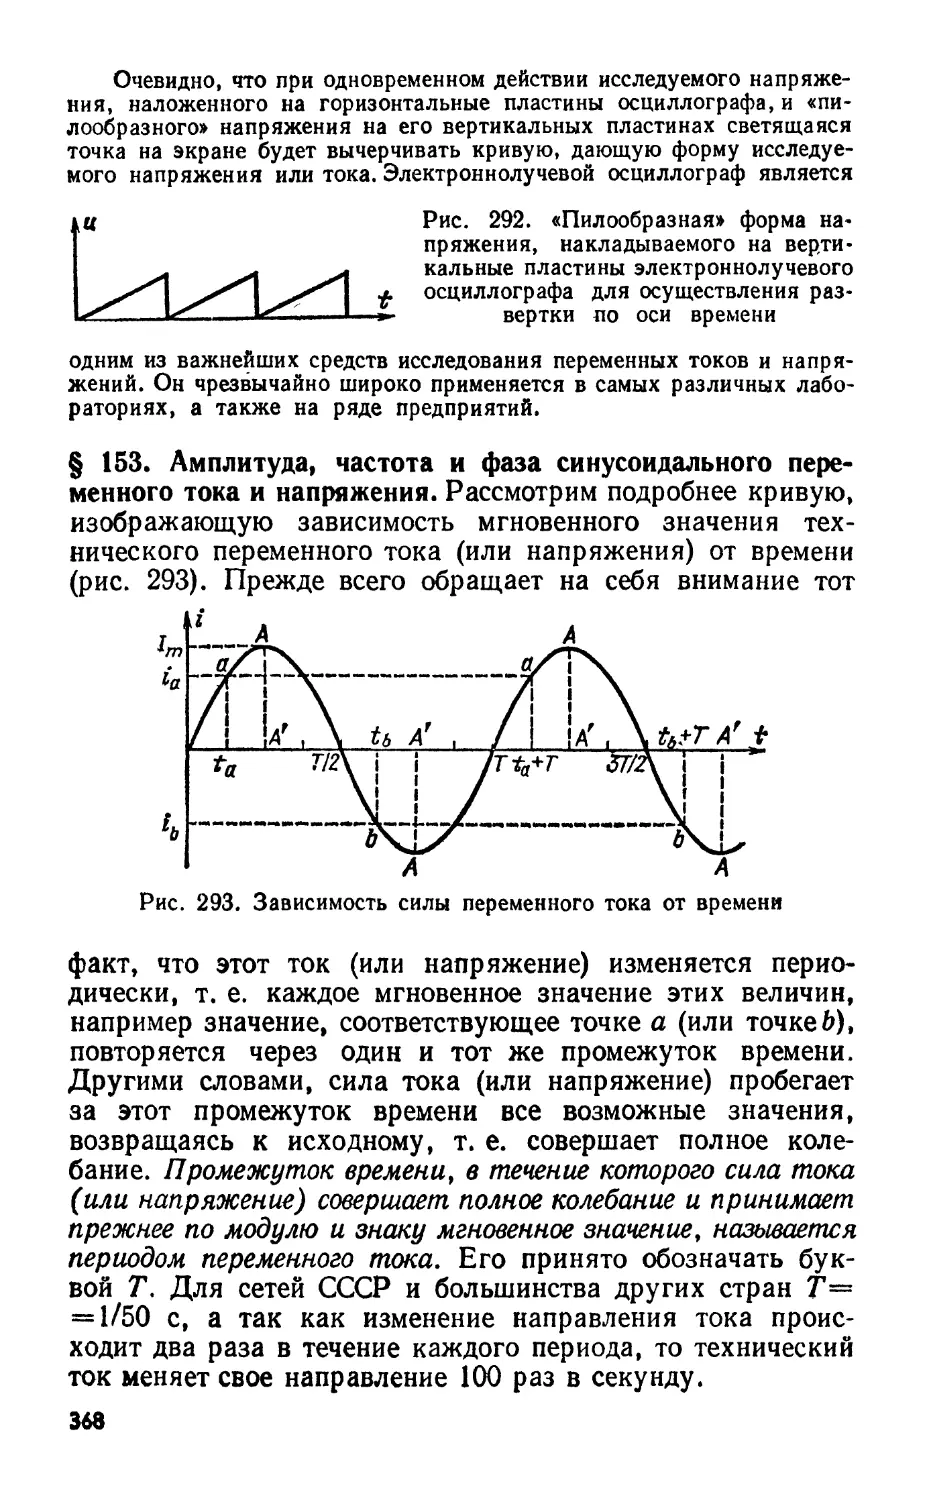 Параметры переменного тока – период, частота и амплитуда.